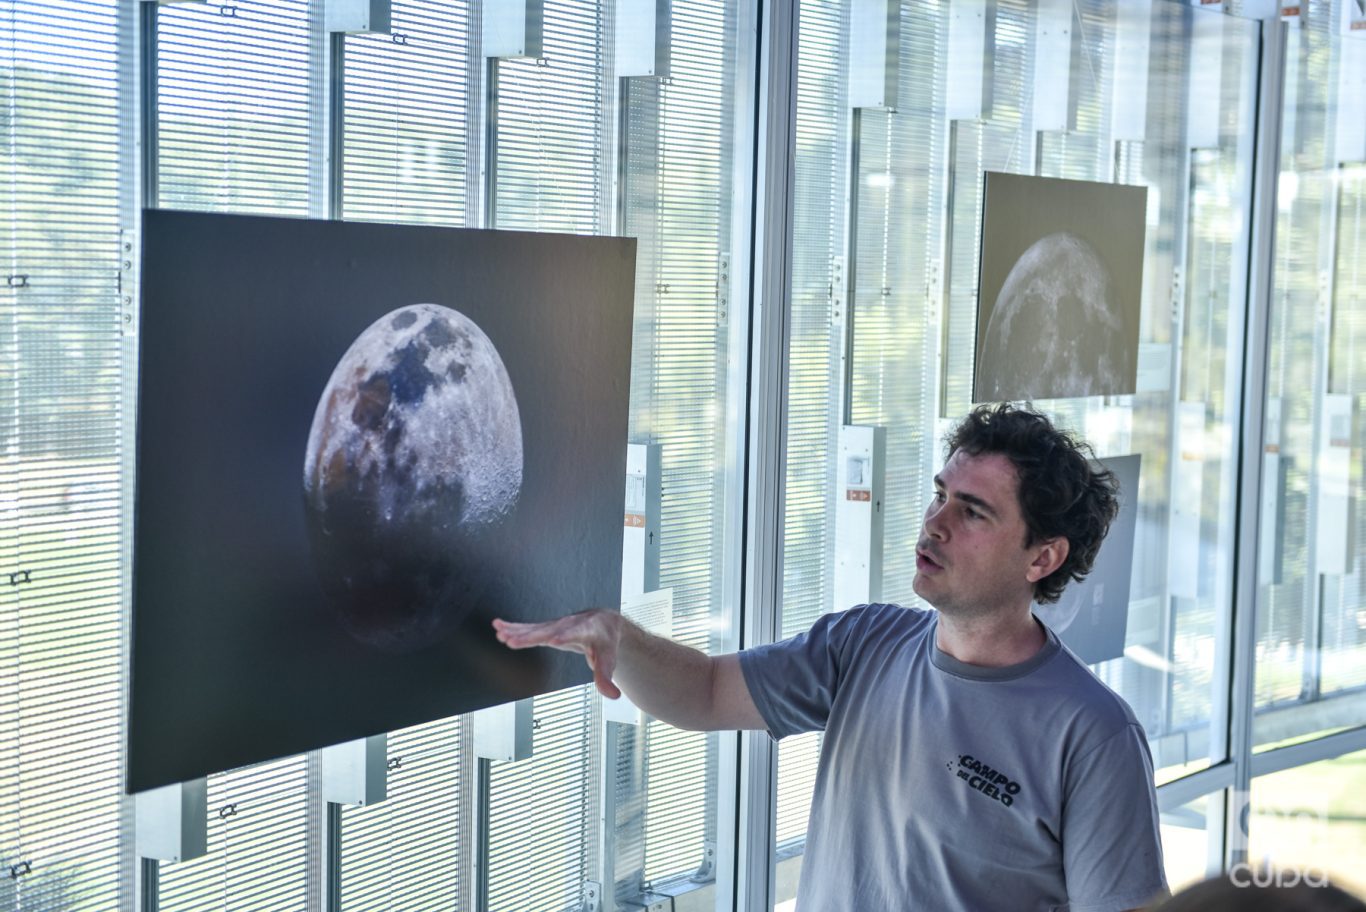 Franco Meconi brinda detalles de una astrofotografía de la Luna tomada por él y exhibida en una exposición en el Planetario de Buenos Aires. Foto: Kaloian.